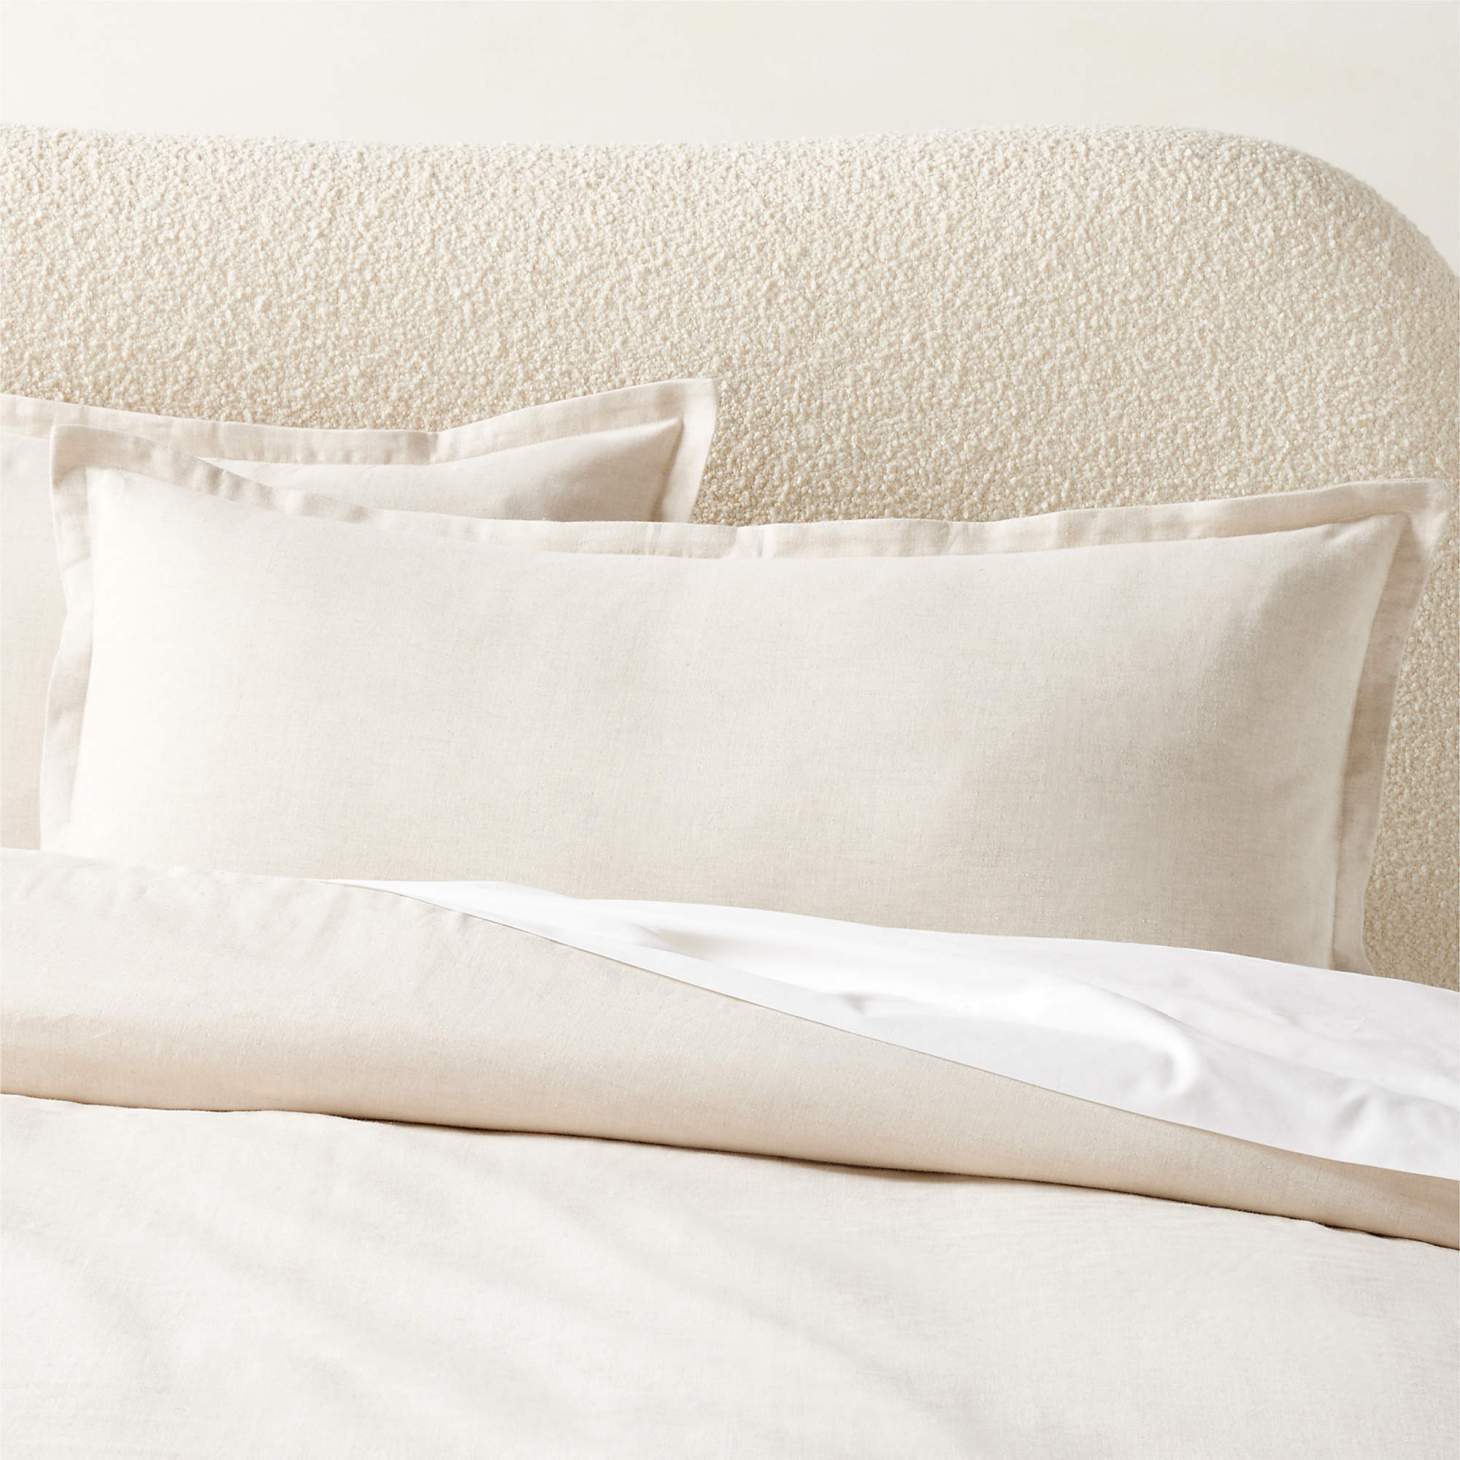 CB2 Kellen pillow shams on a bed